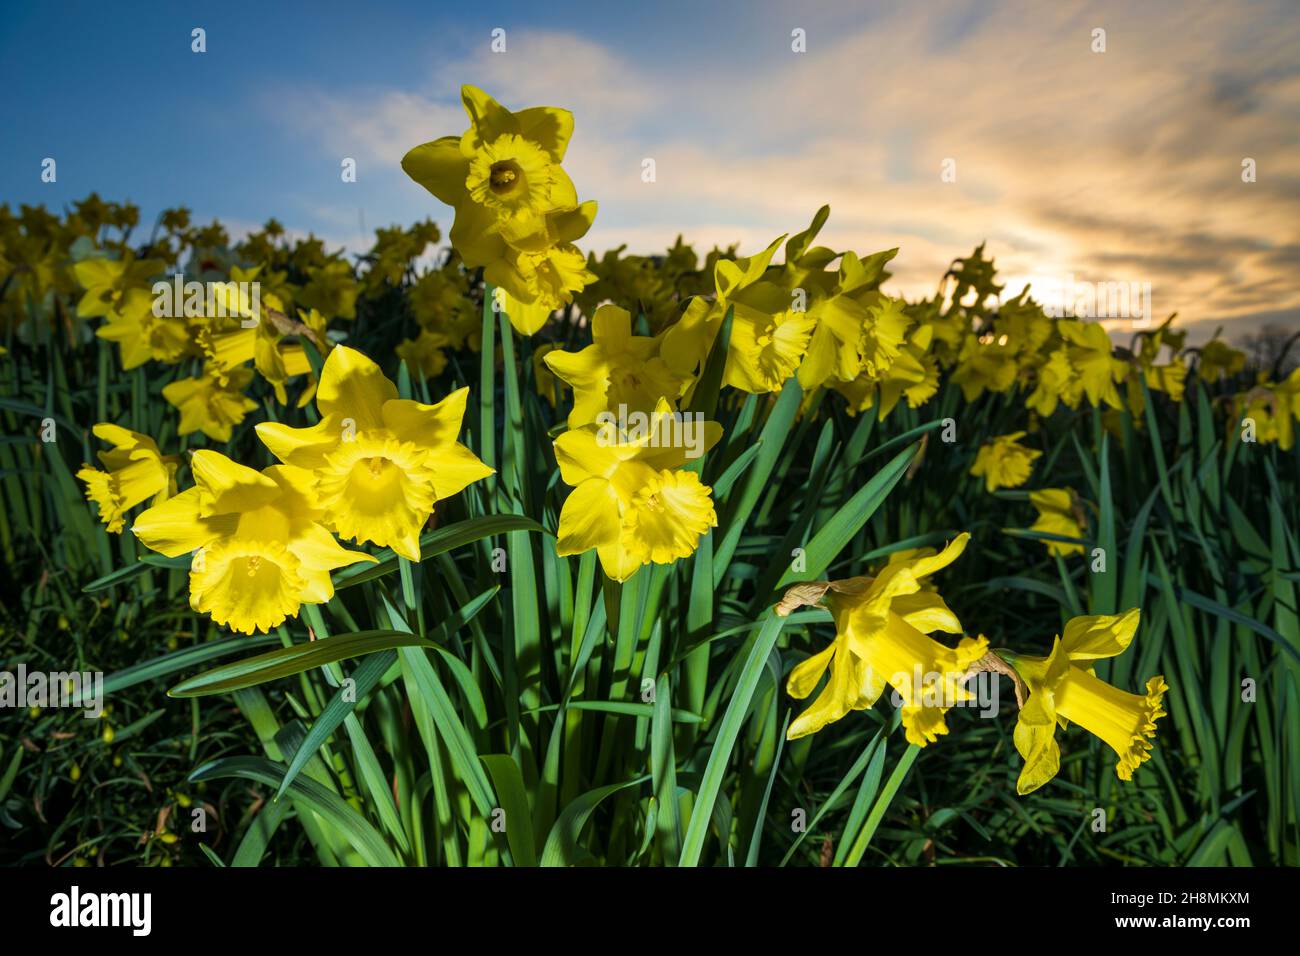 Daffodils growing against sunrise sky, Hampshire, England, United Kingdom, Europe Stock Photo